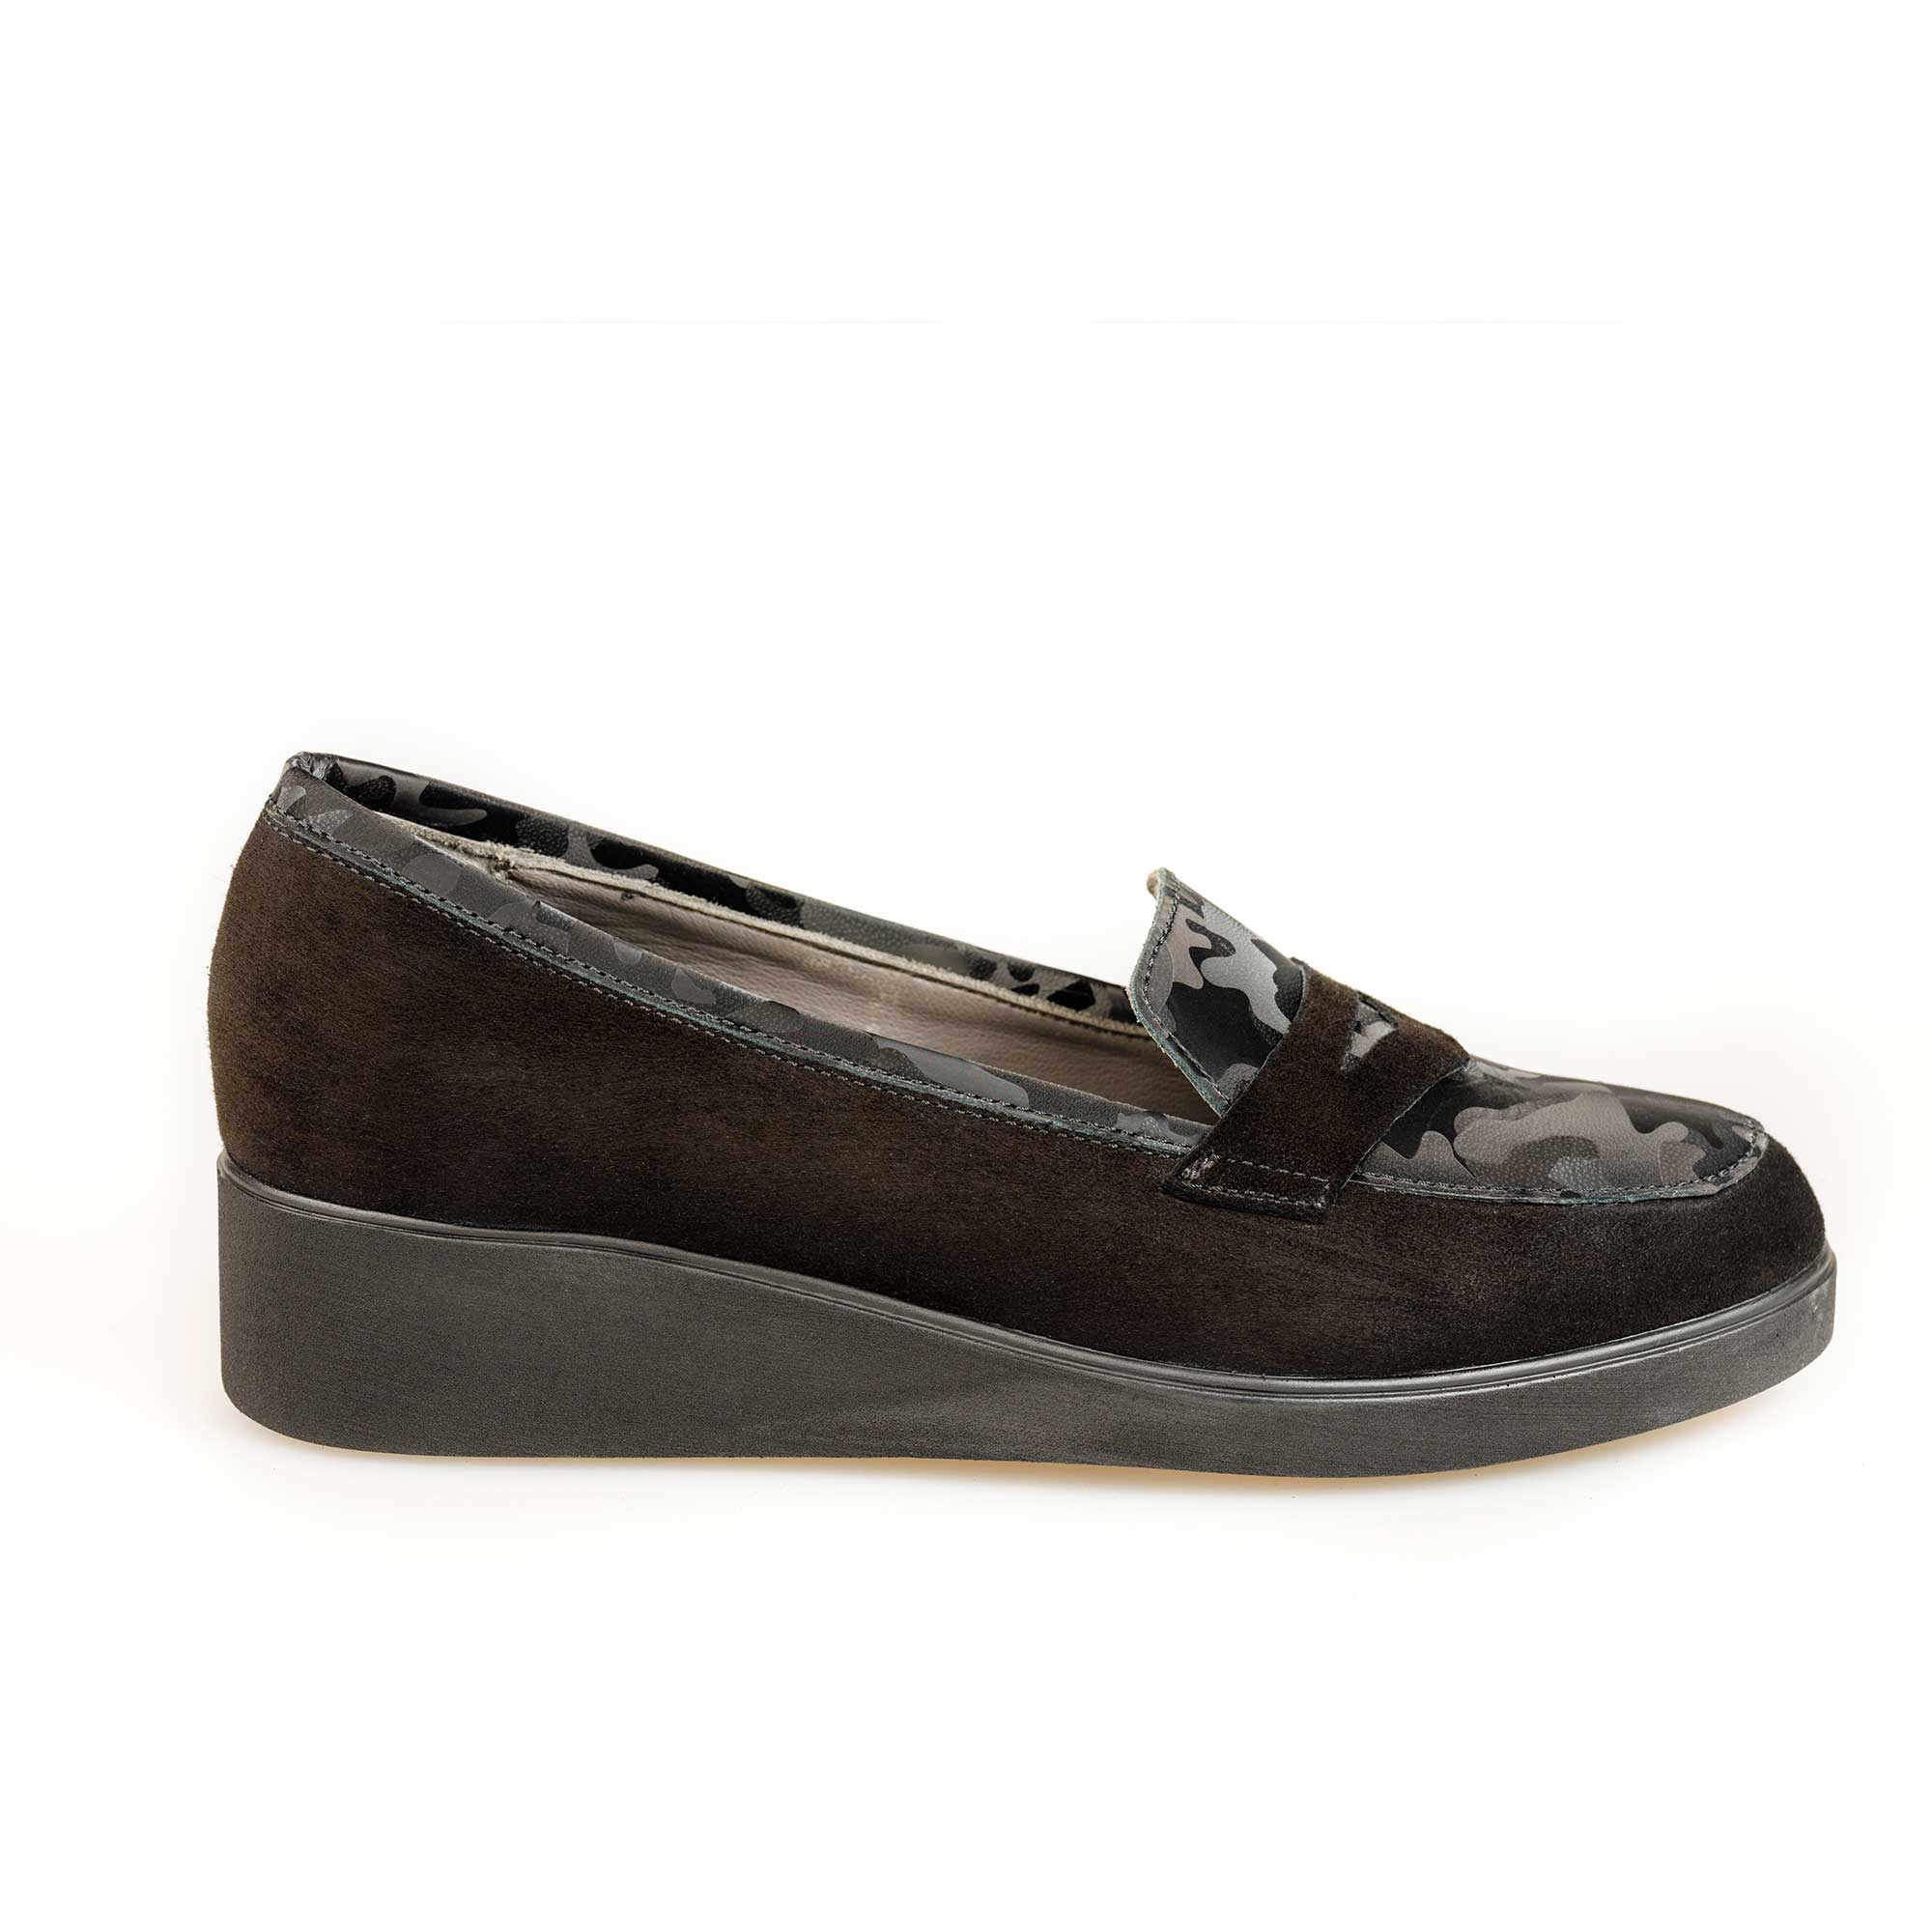 Pantofi damă din piele naturală Atena Negru 109-Nv